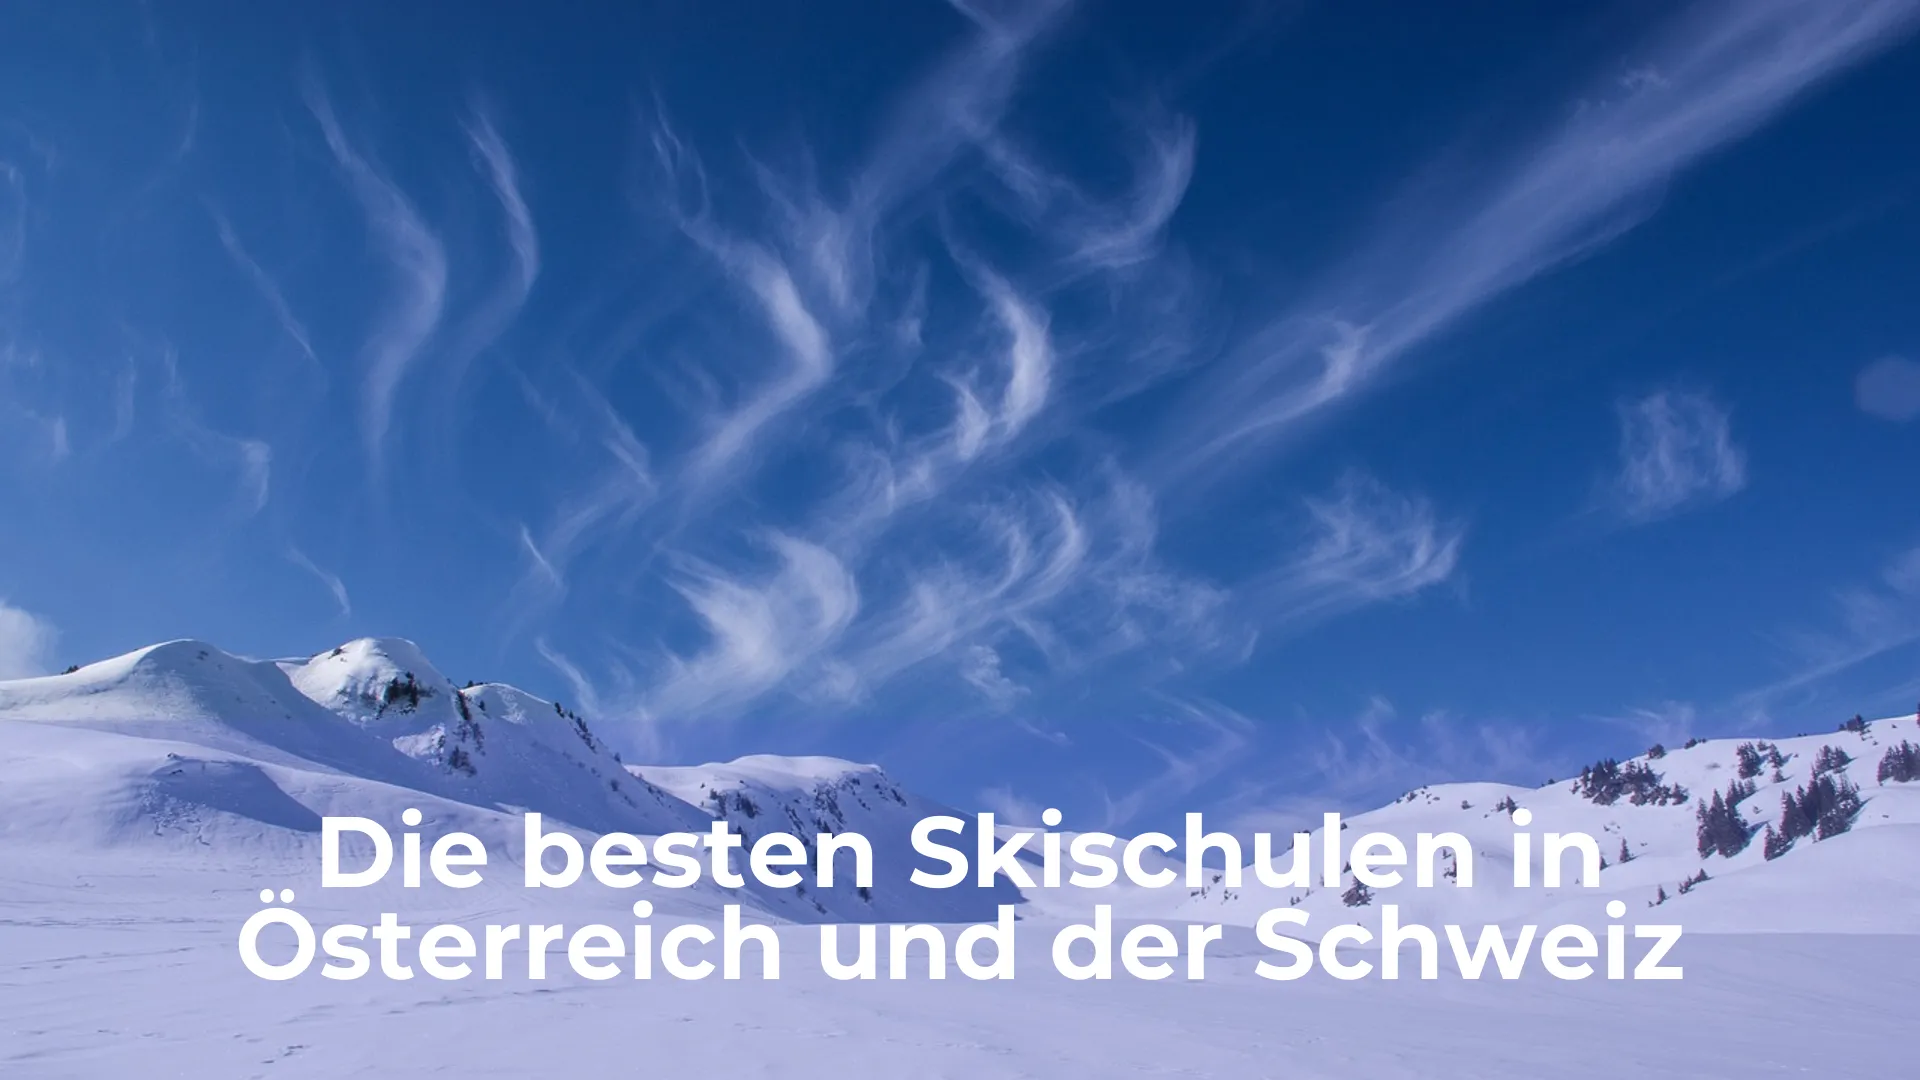 Die besten skischulen in österreich und der schweiz